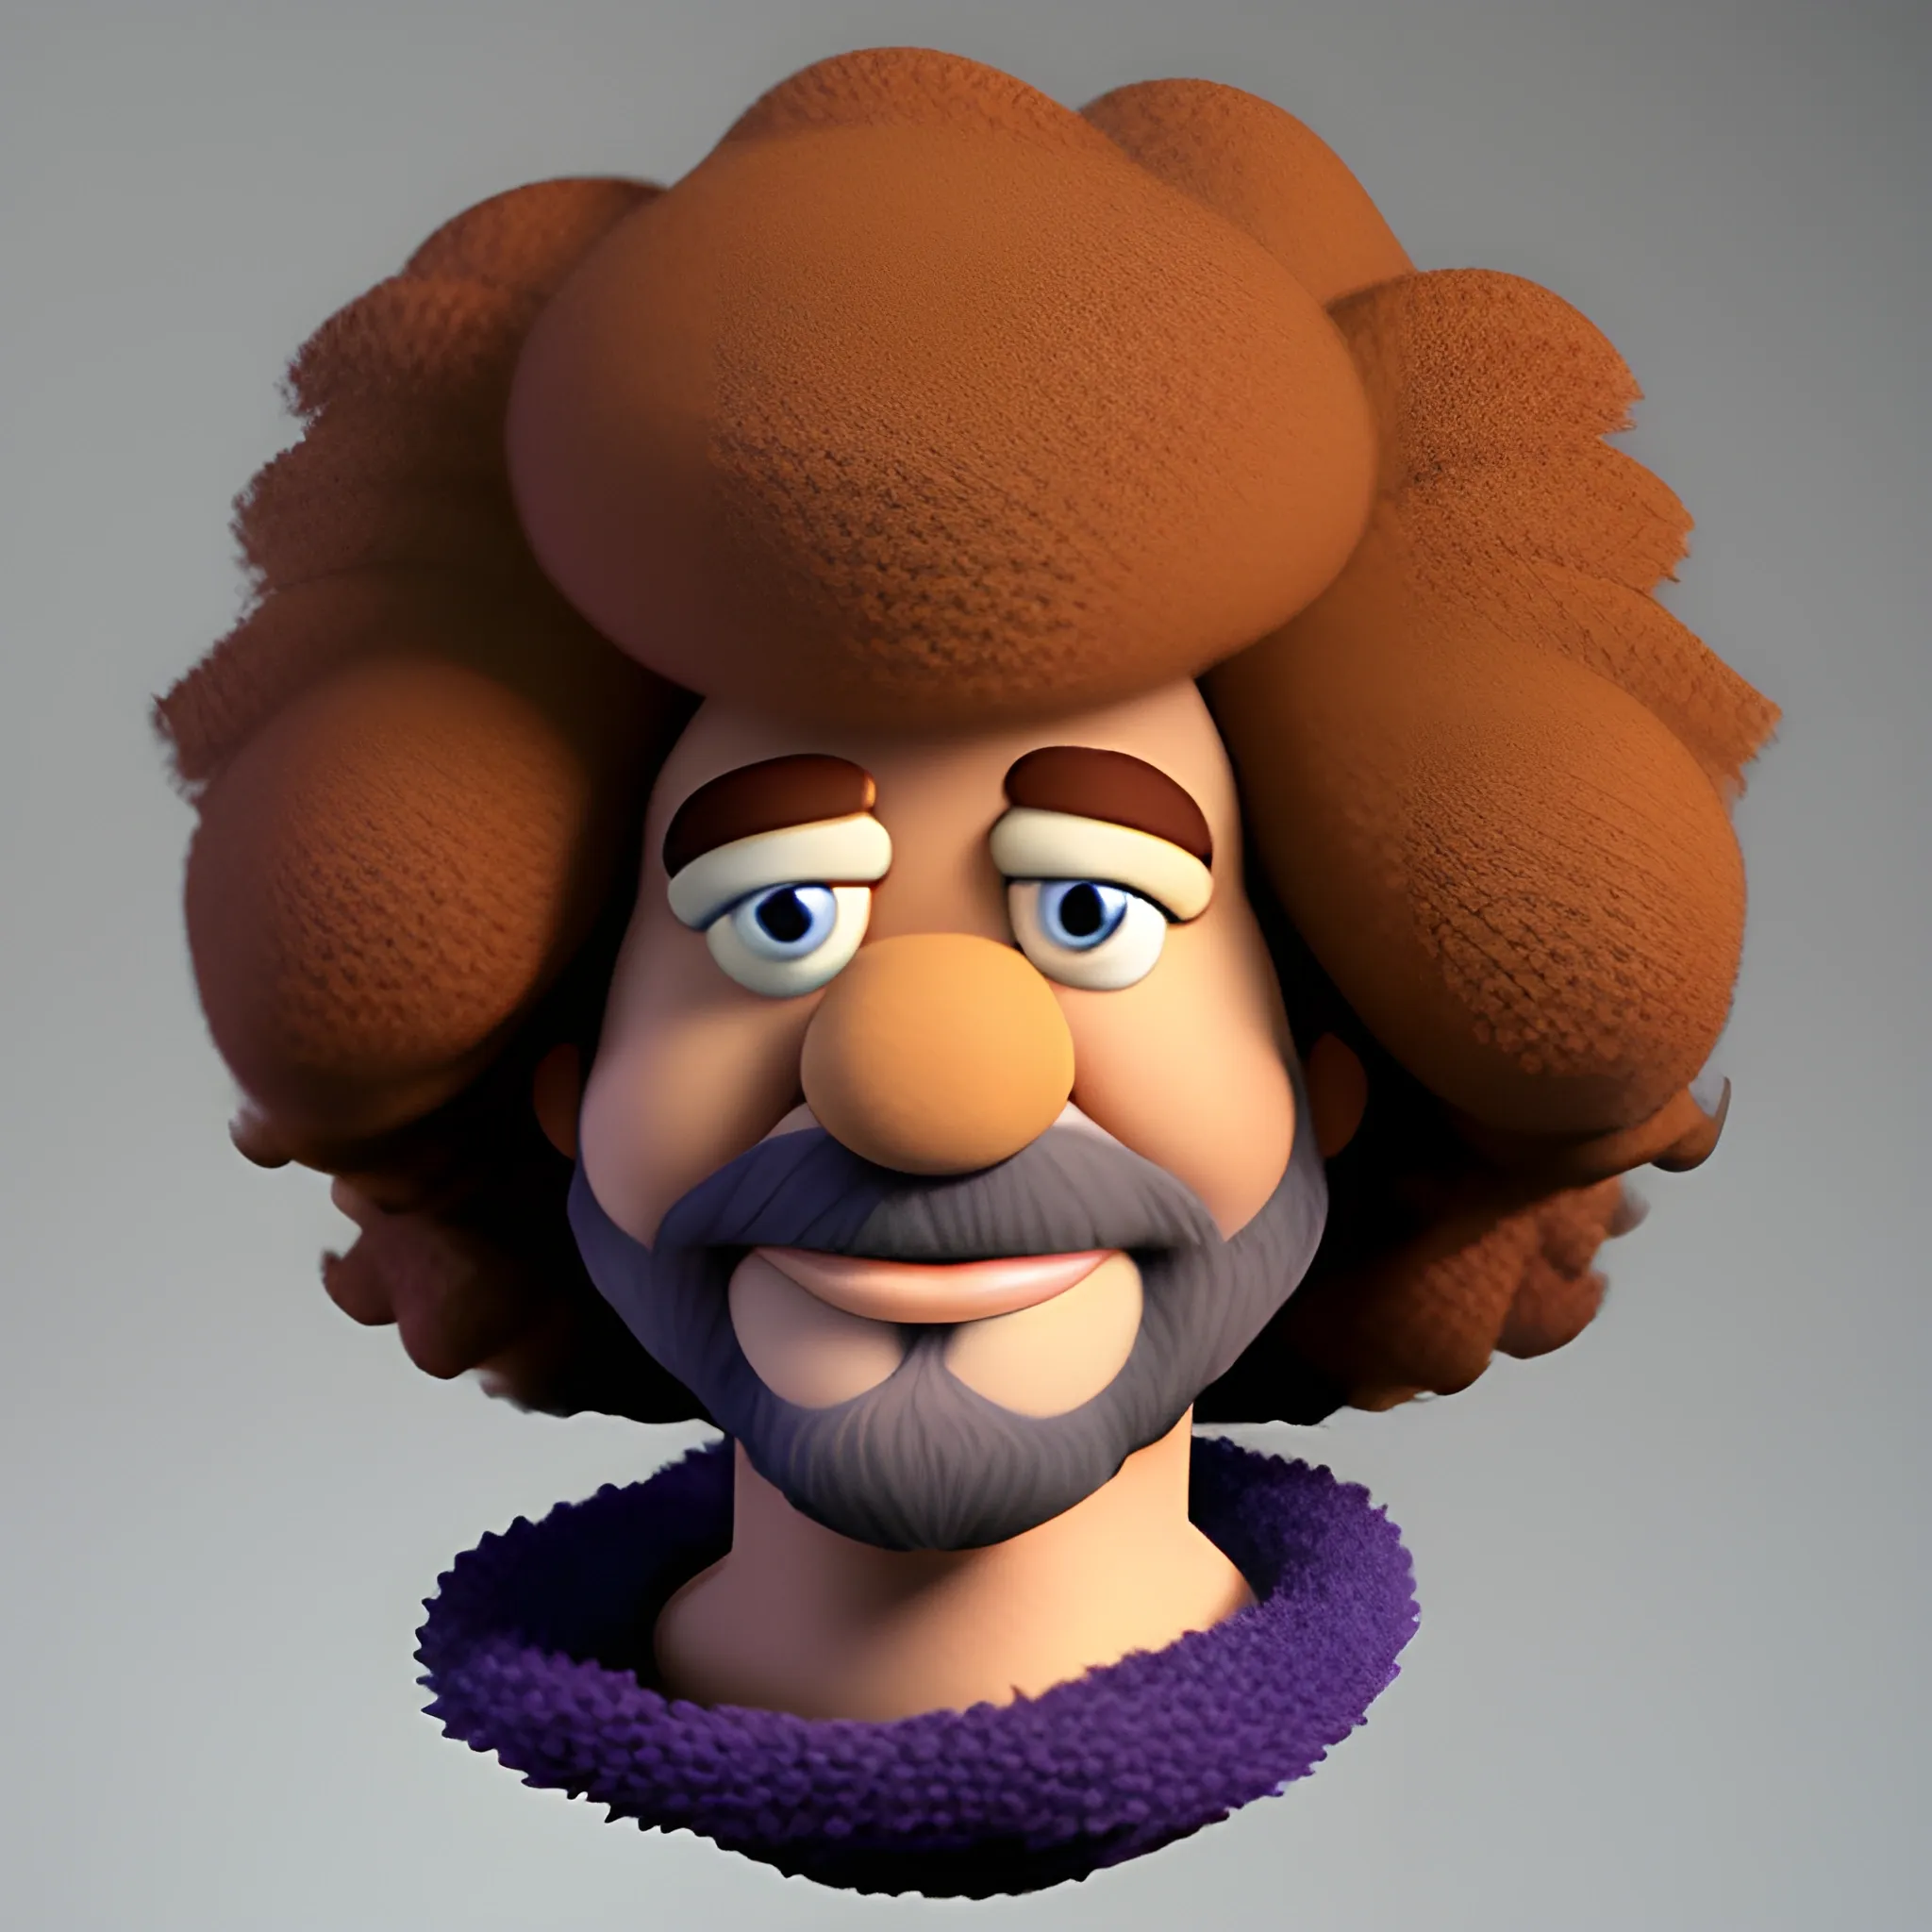 Bob Ross, cartoon , muppet, furry, yarn, 3D
, hair